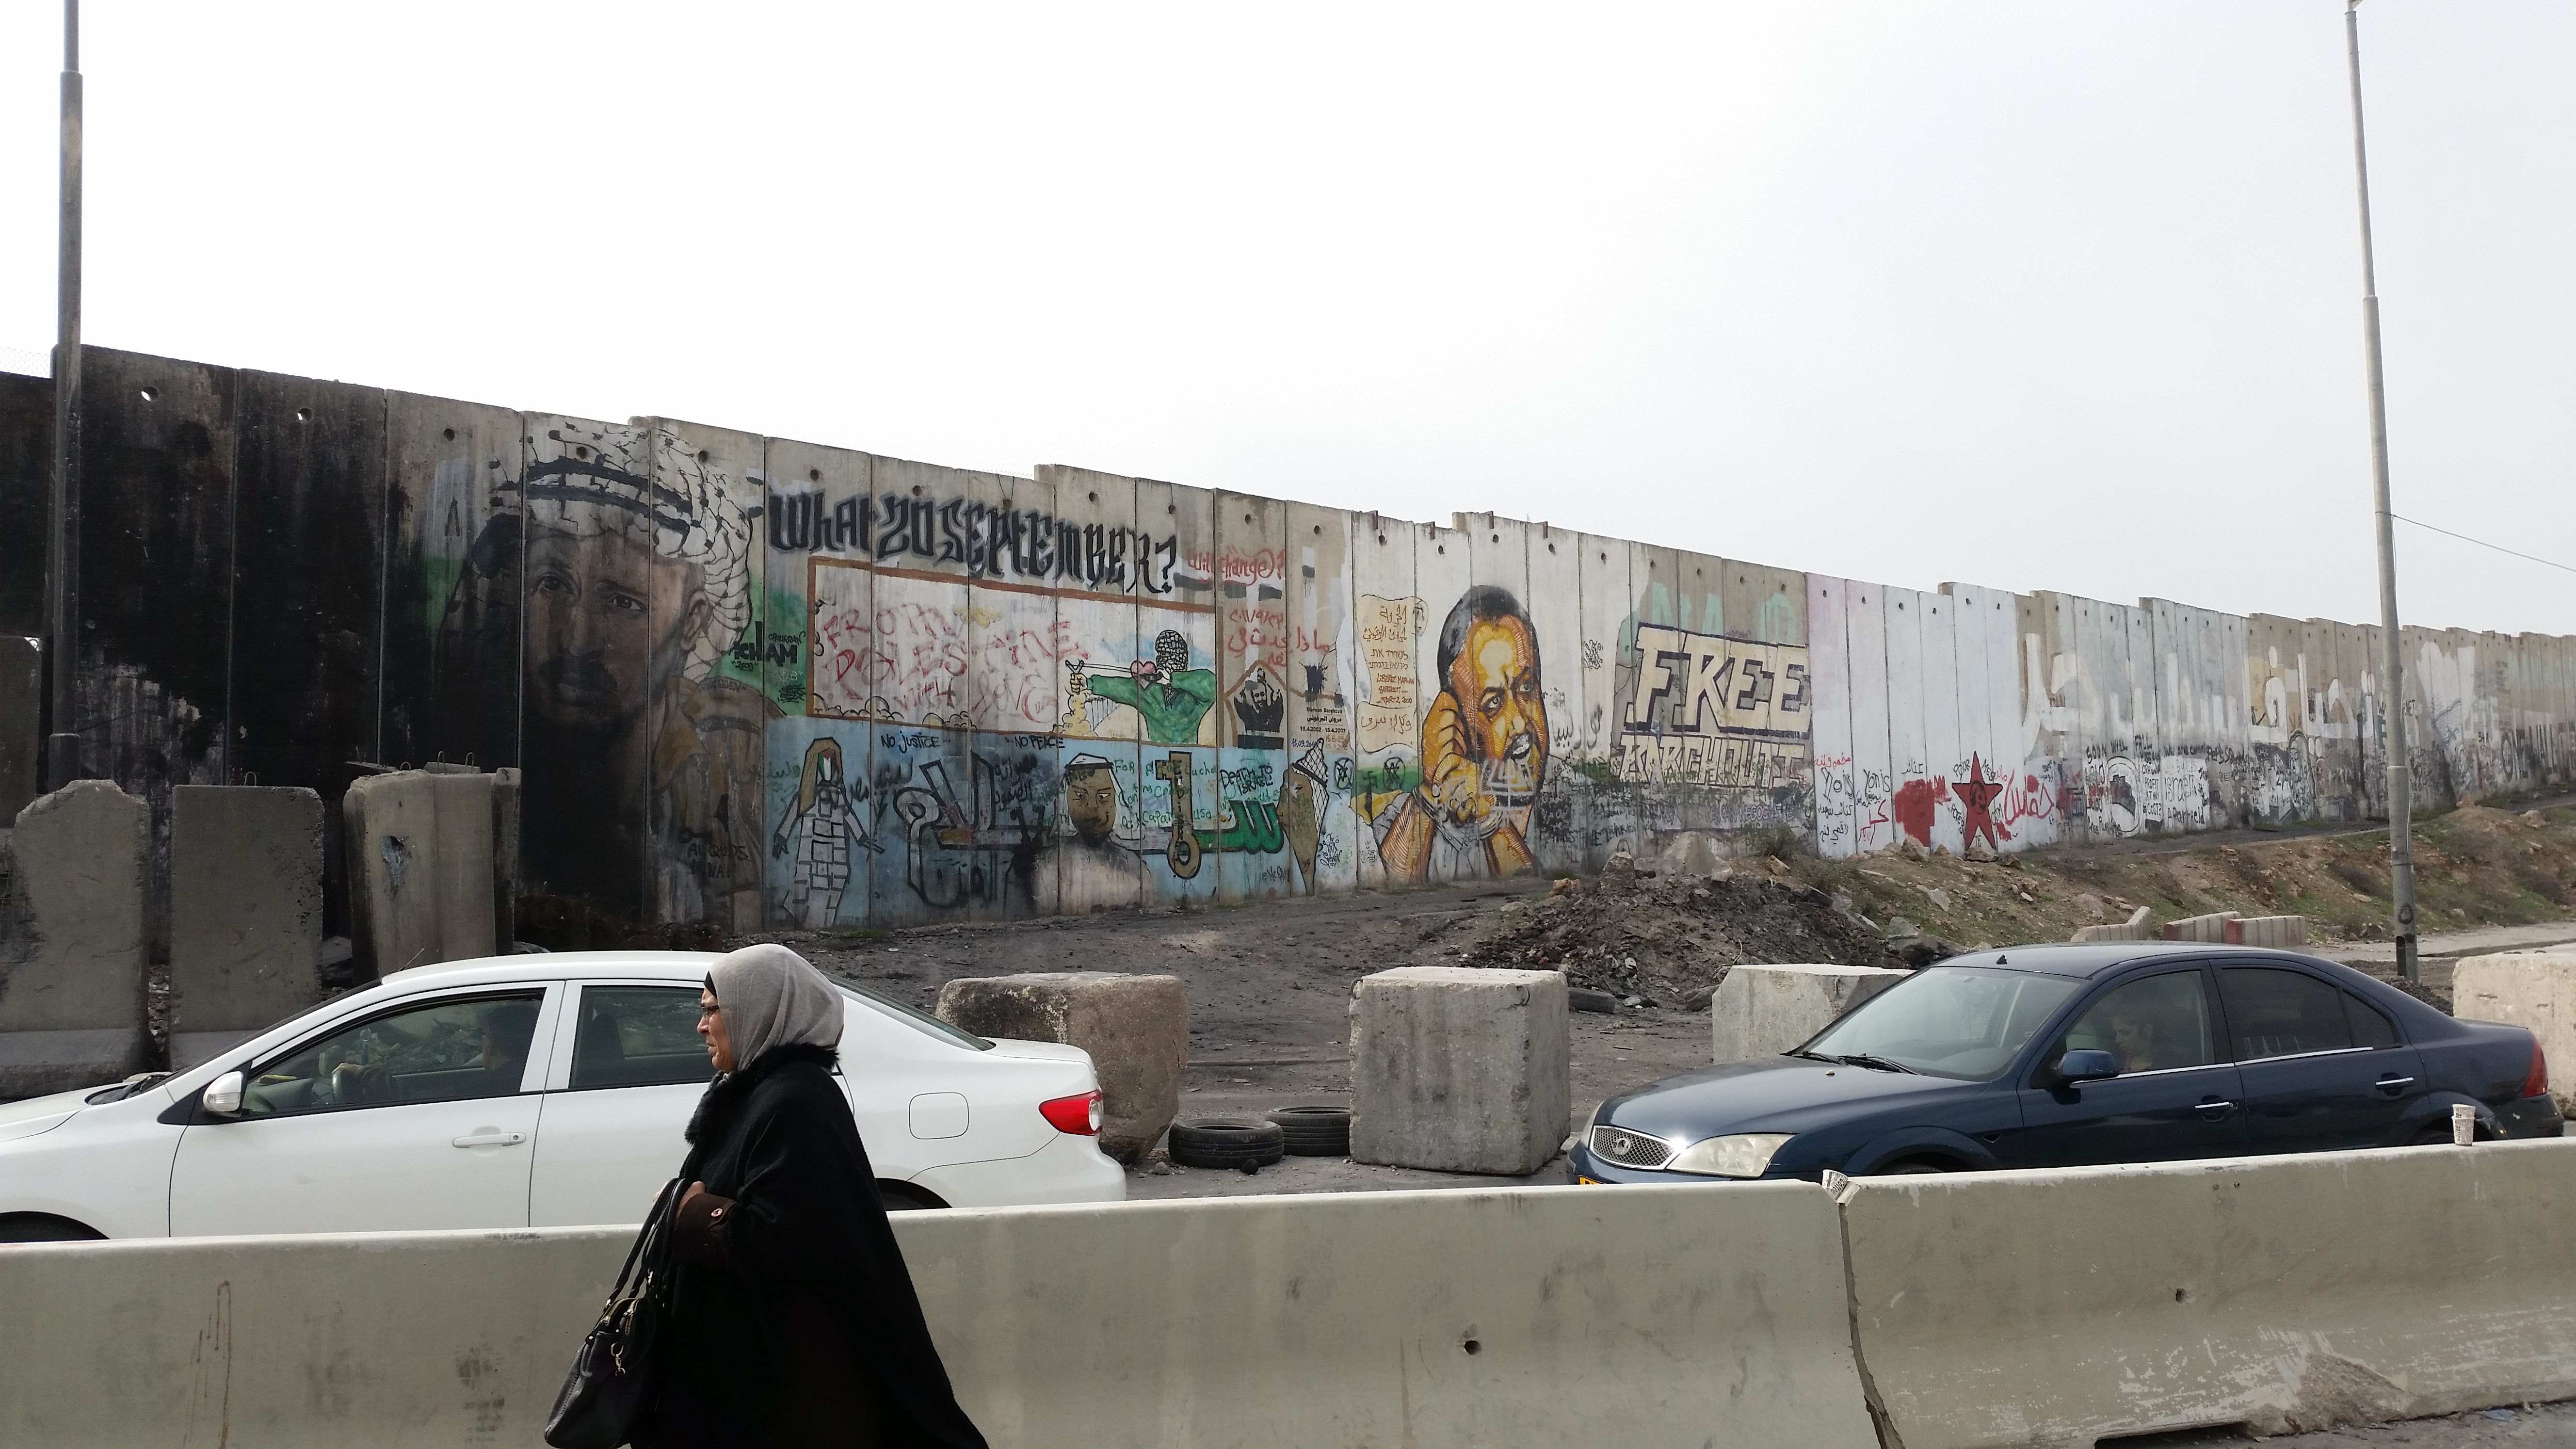 Fal Kalandiánál, a Ramallah és Jeruzsálem közötti fő ellenőrző pontnál. A legtöbb helyen a fal palesztin oldalán képekkel és festett feliratokkal üzennek a palesztinok.